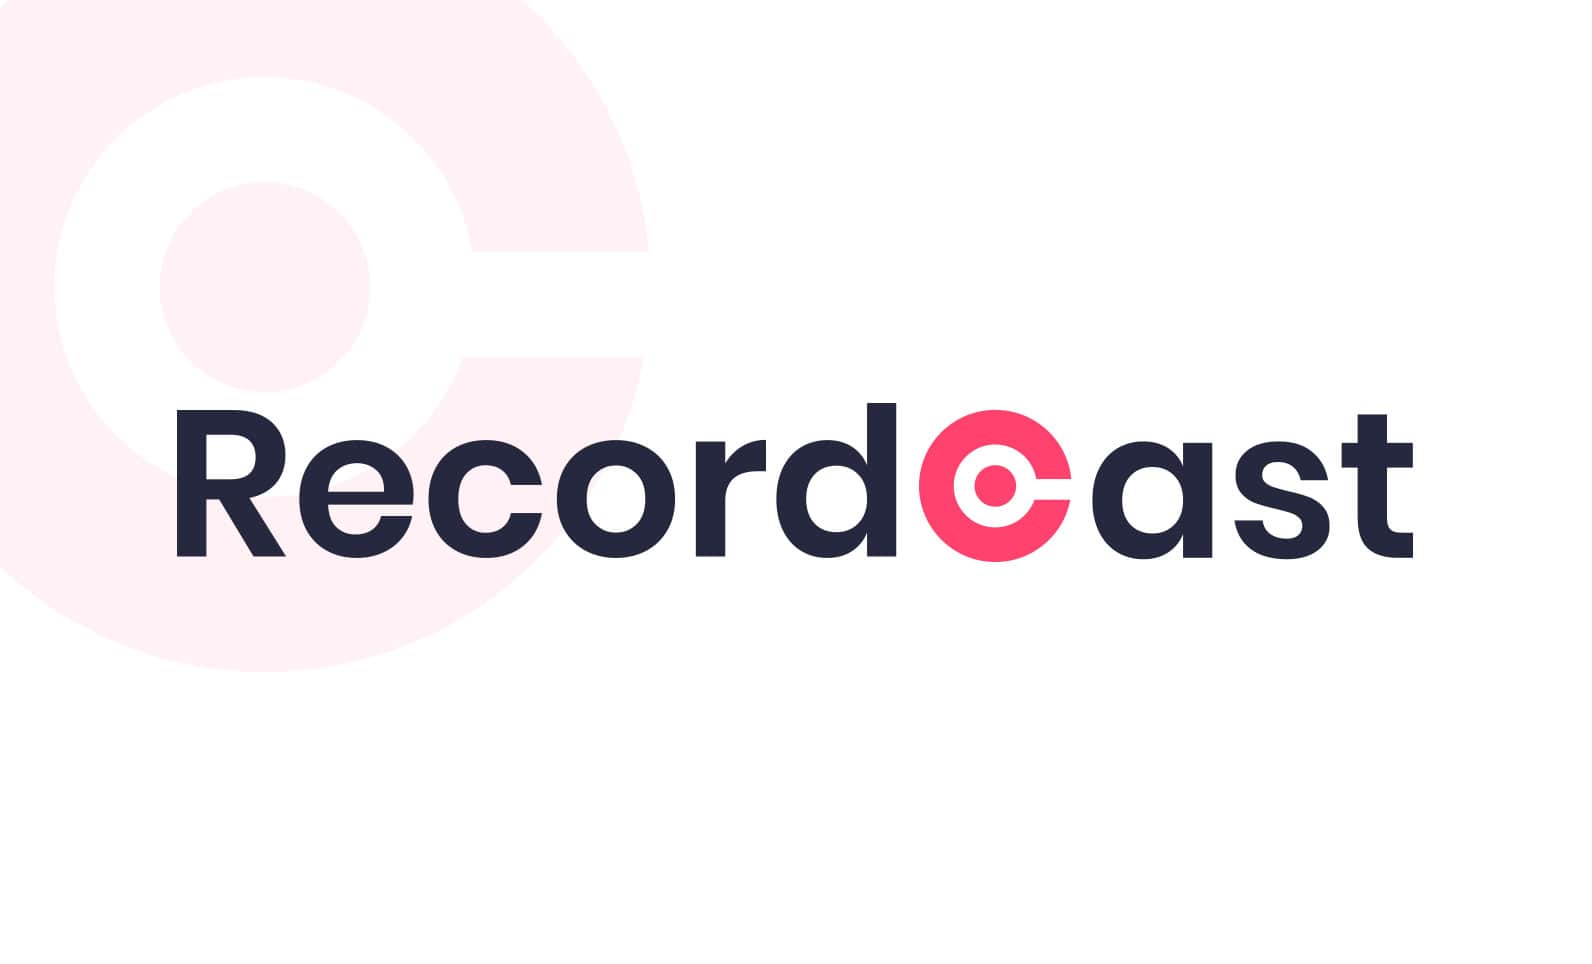 Recordcast